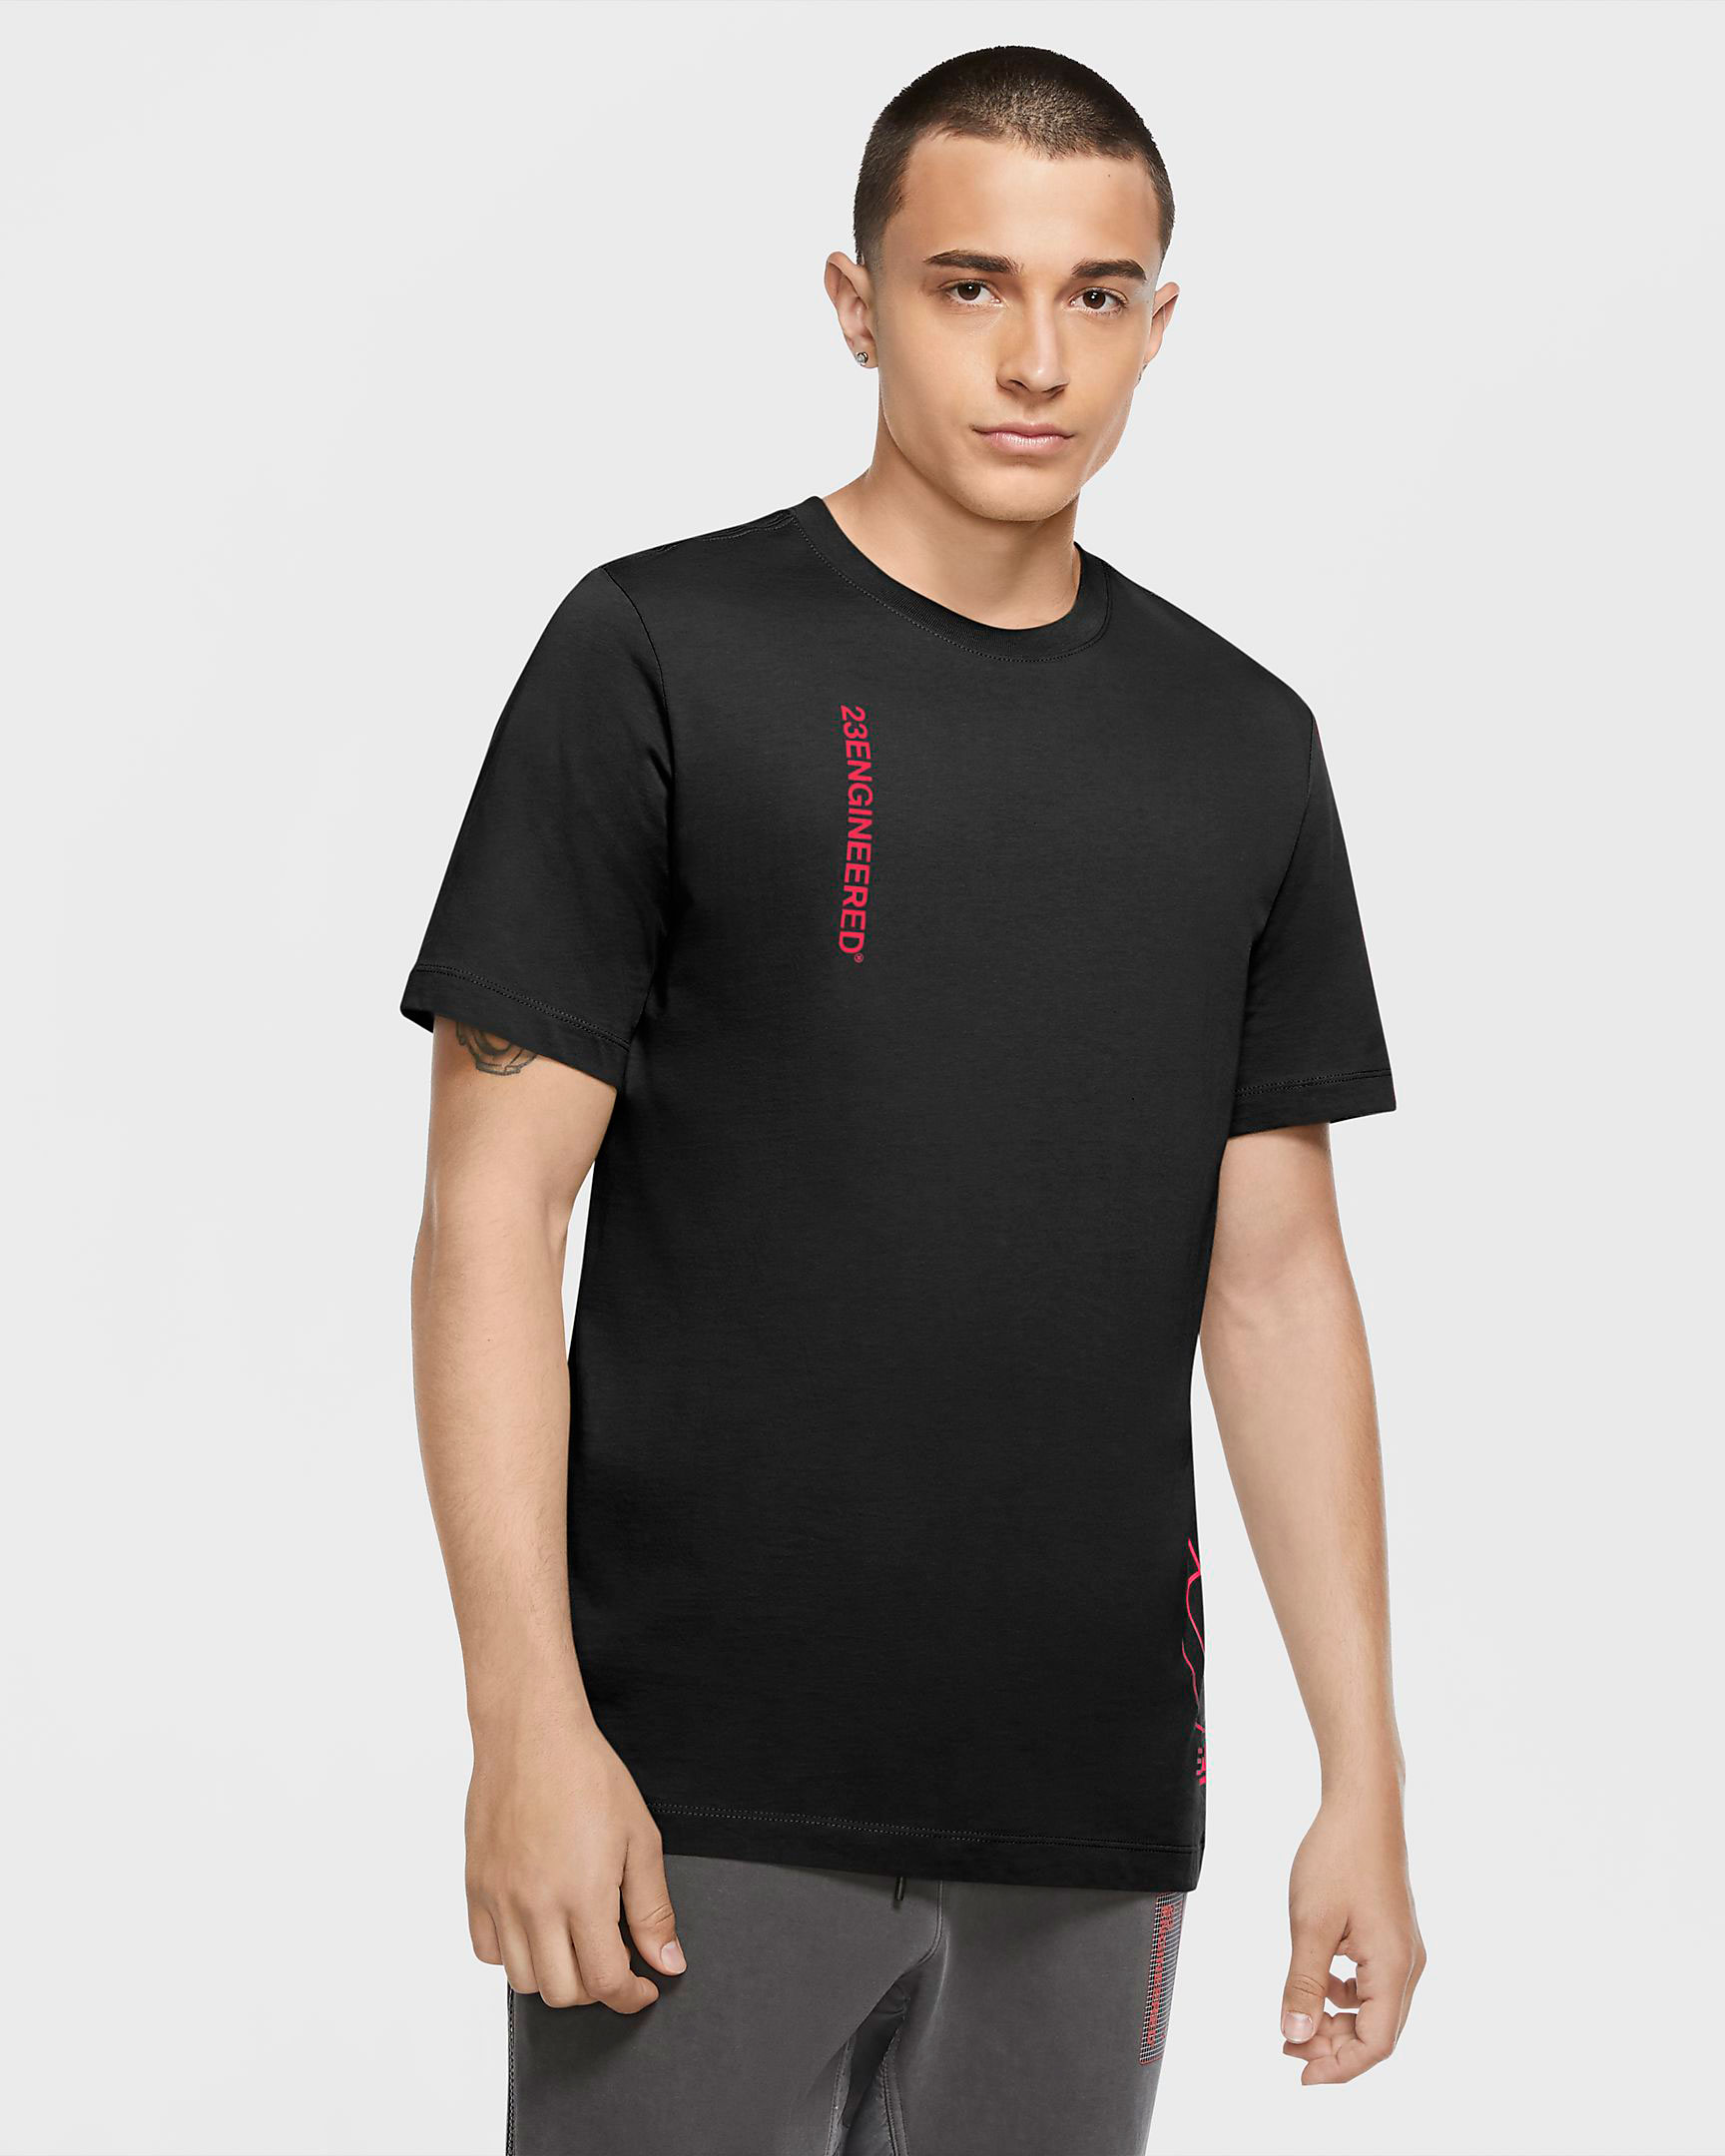 jordan-23-engineered-shirt-black-infrared-1